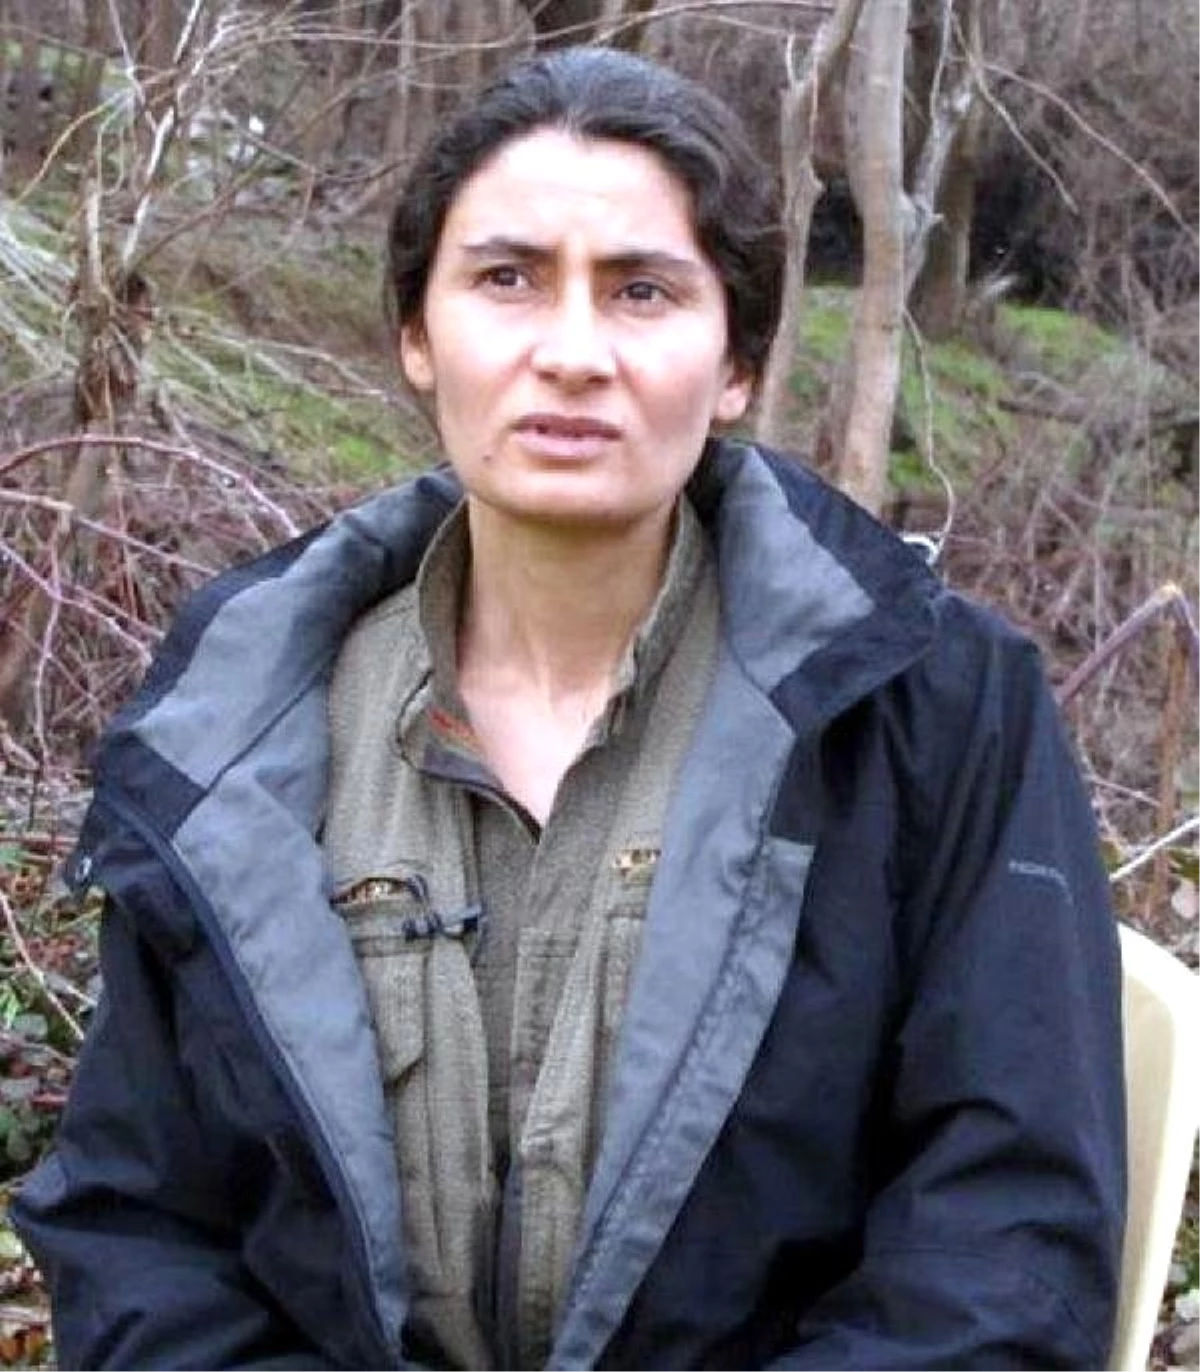 KCK Yöneticisi: Anayasa Değişirse PKK Silahsızlanmayı Gündemine Alır